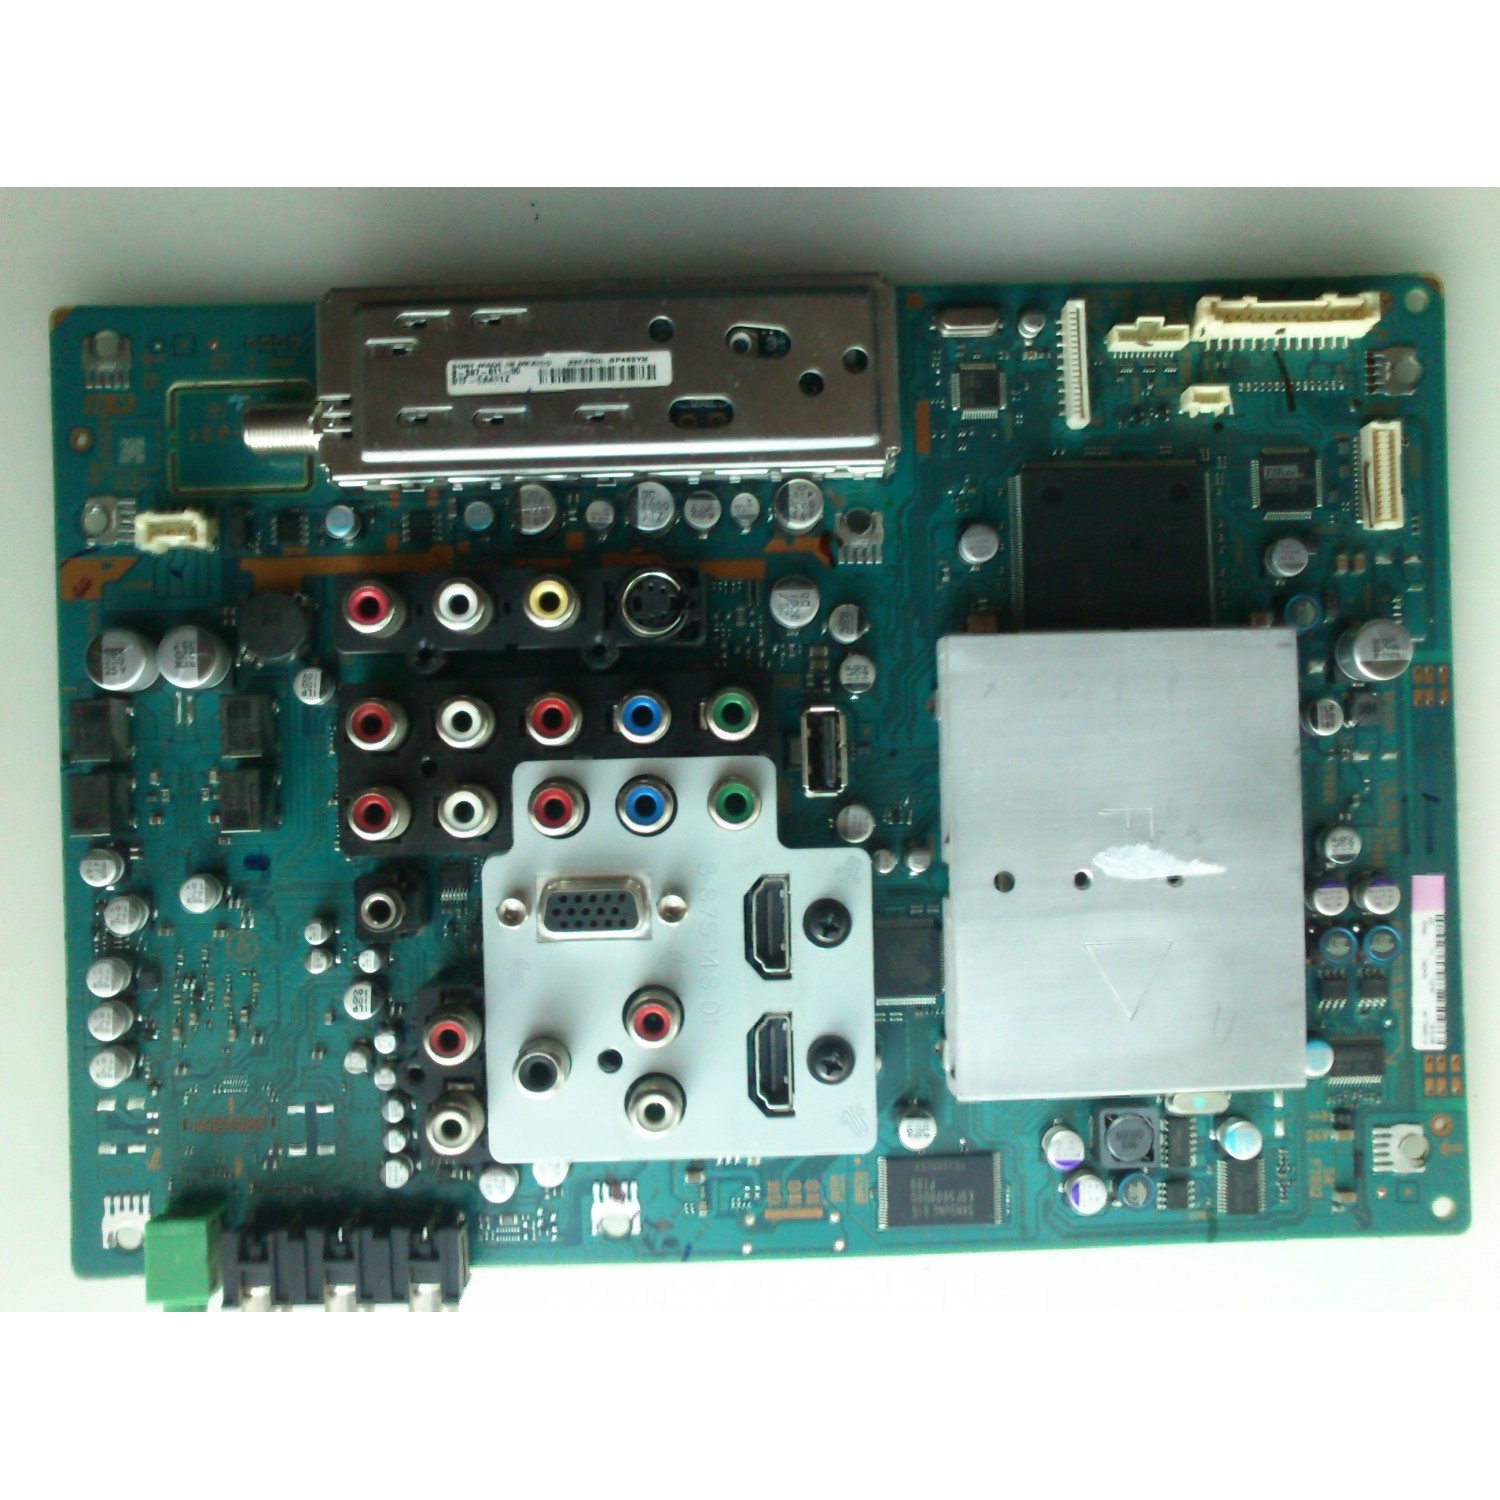 HCDZ Mando a Distancia de Repuesto para Sony KDL-32BX300 KDL-32BX330  KDL-37N4000 KDL-37NL140 KDL-40BX420 KDL-40BX421 KDL-37M4000 KLV-40S200 LCD  LED